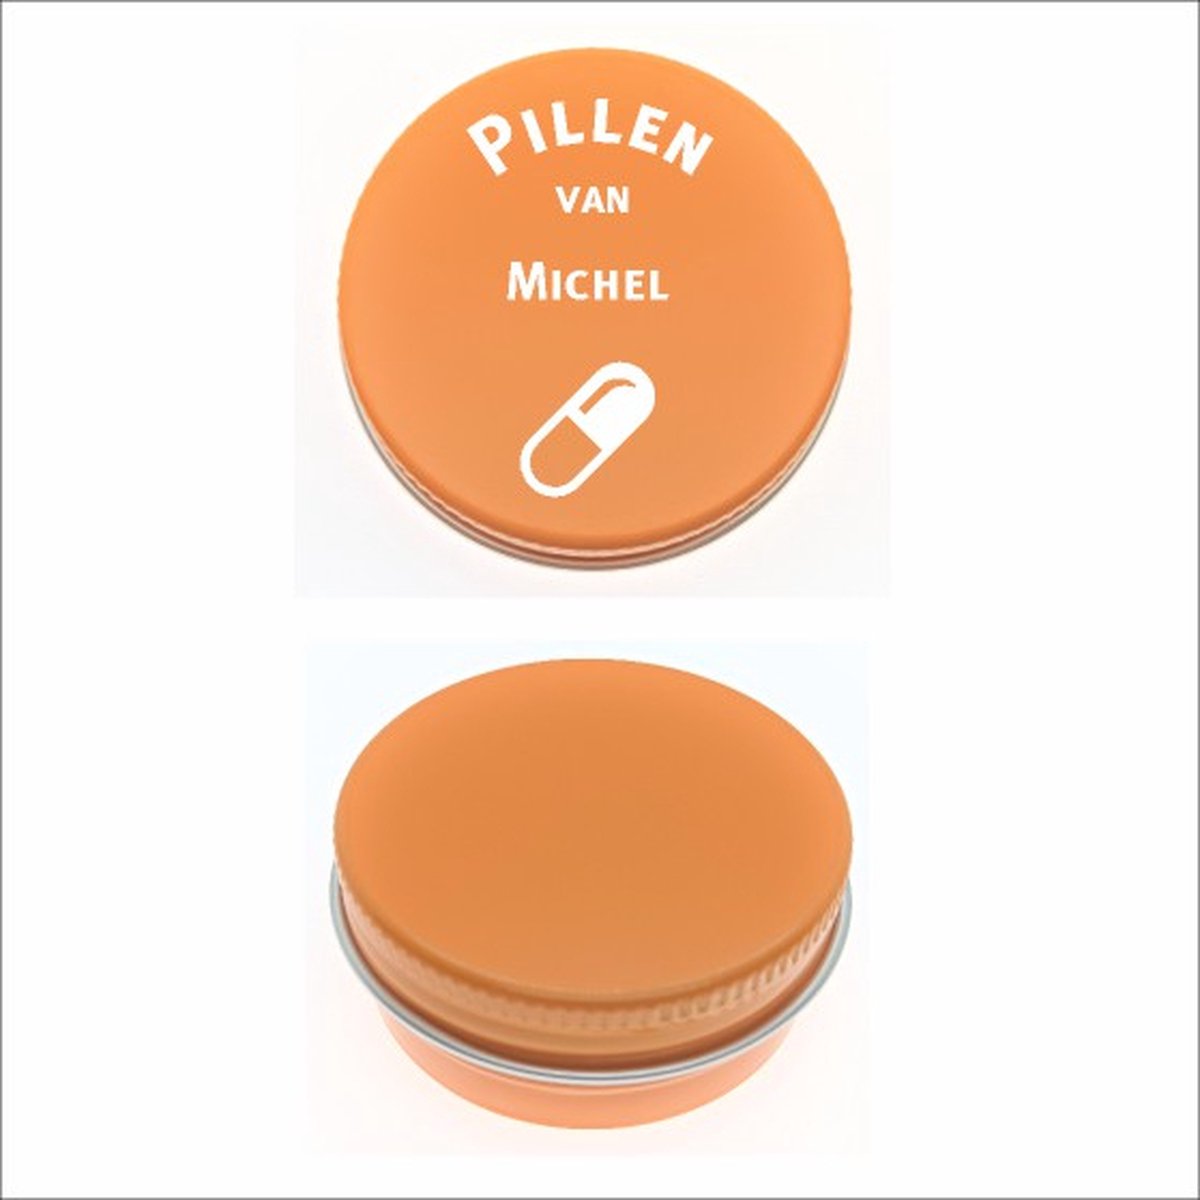 Pillen Blikje Met Naam Gravering - Michel